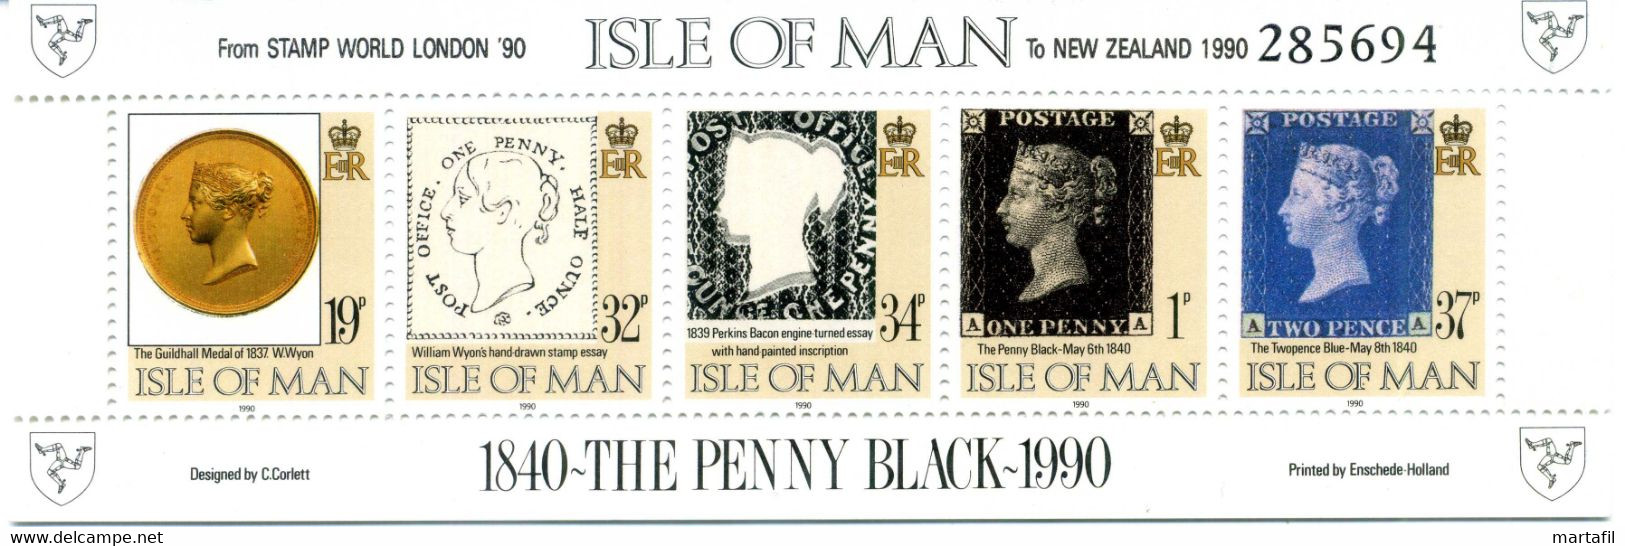 1990 MAN BF 13A MNH ** London 90 / New Zeland 90 - Isle Of Man